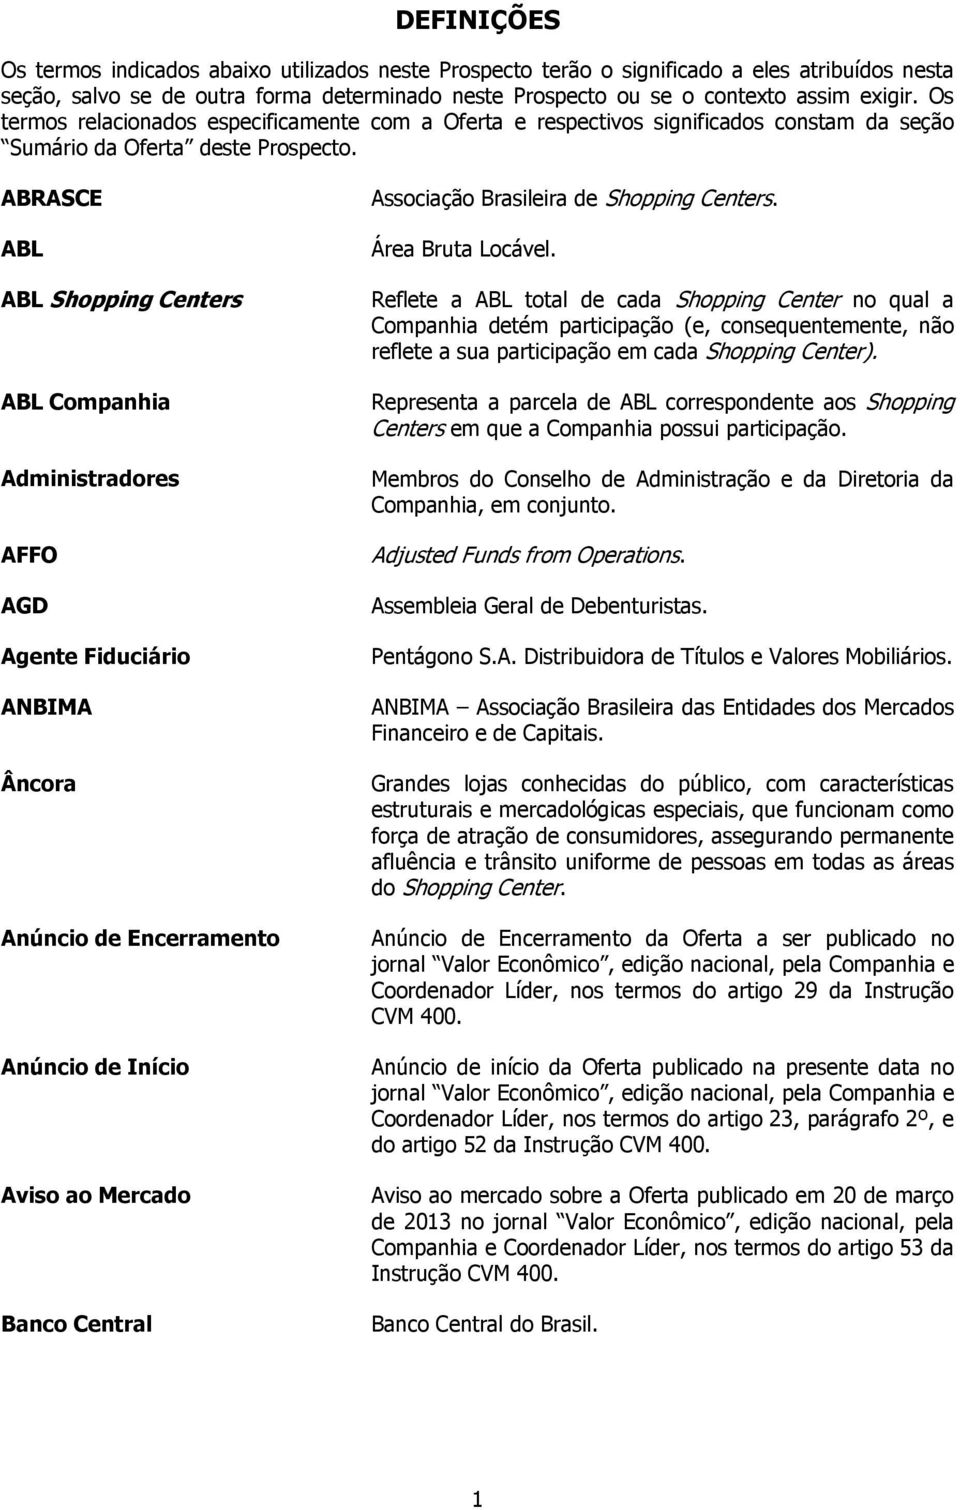 ABRASCE ABL ABL Shopping Centers ABL Companhia Administradores AFFO AGD Agente Fiduciário ANBIMA Âncora Anúncio de Encerramento Anúncio de Início Aviso ao Mercado Banco Central Associação Brasileira